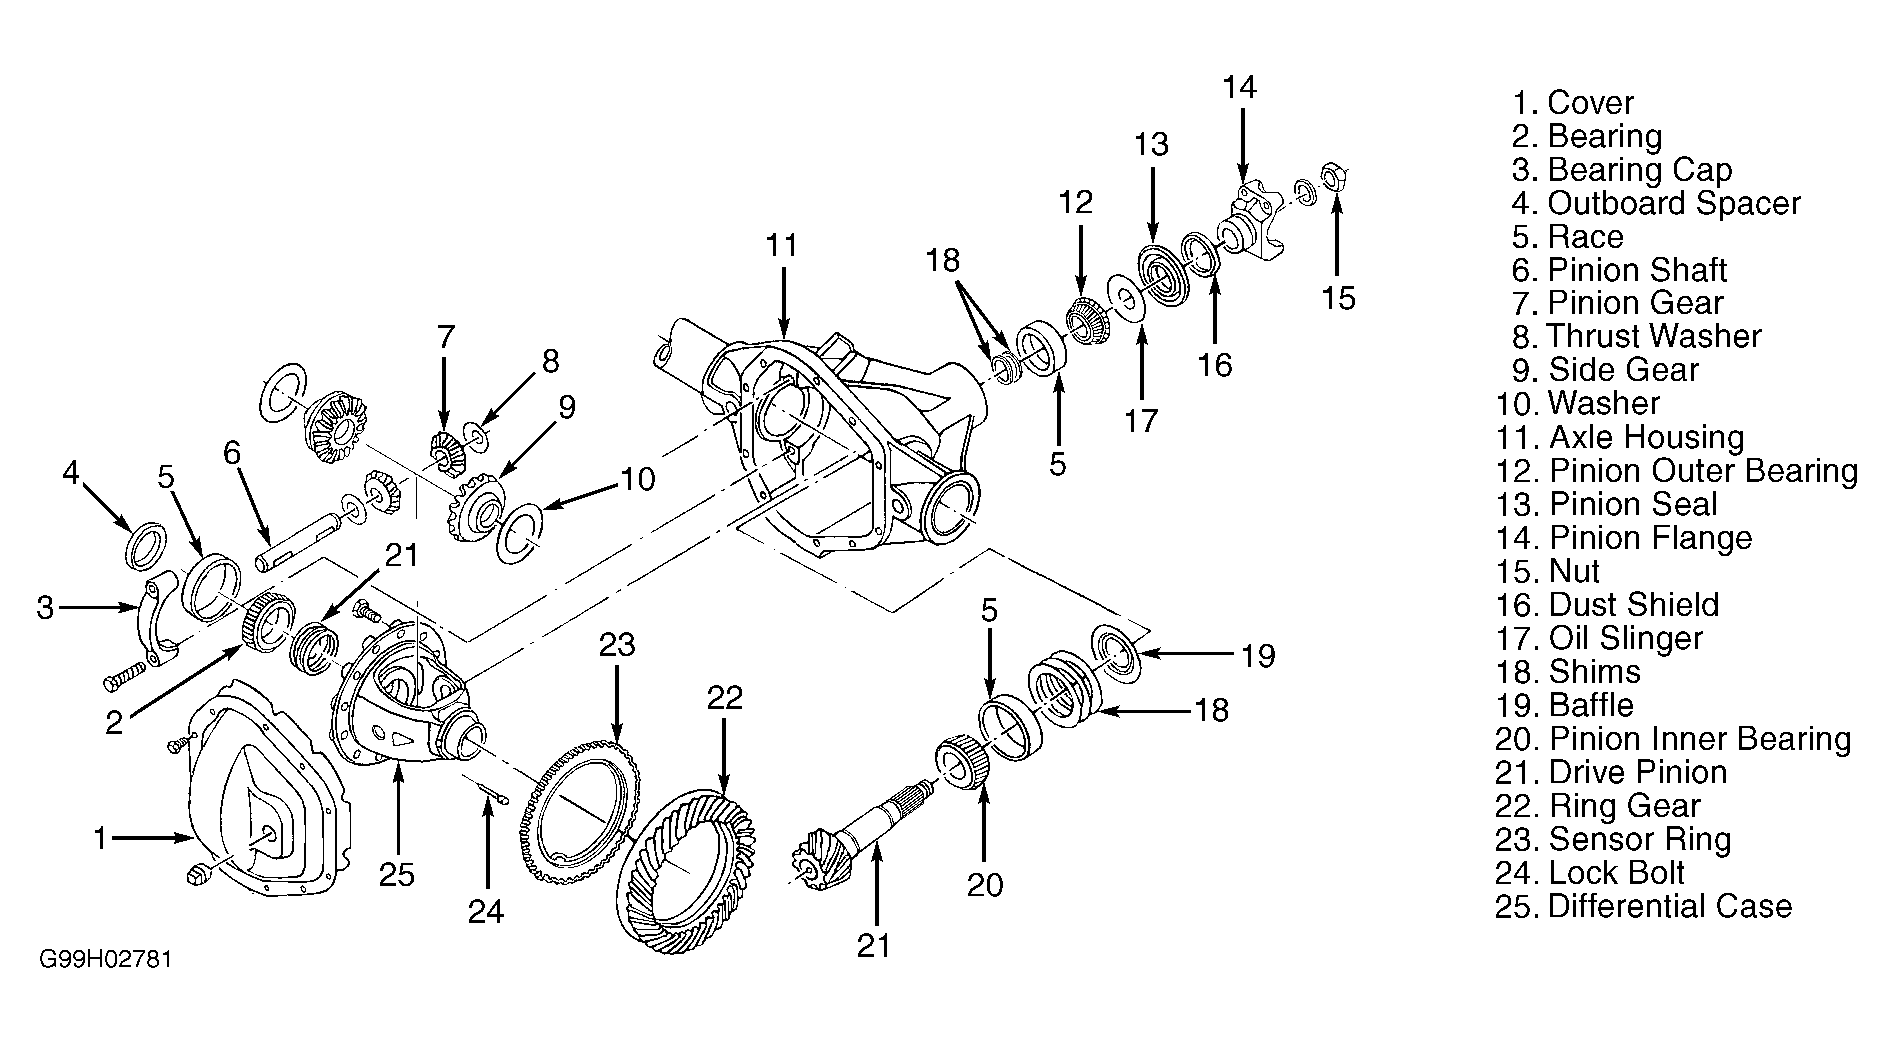 Ford F350 Rear Axle Diagram - General Wiring Diagram